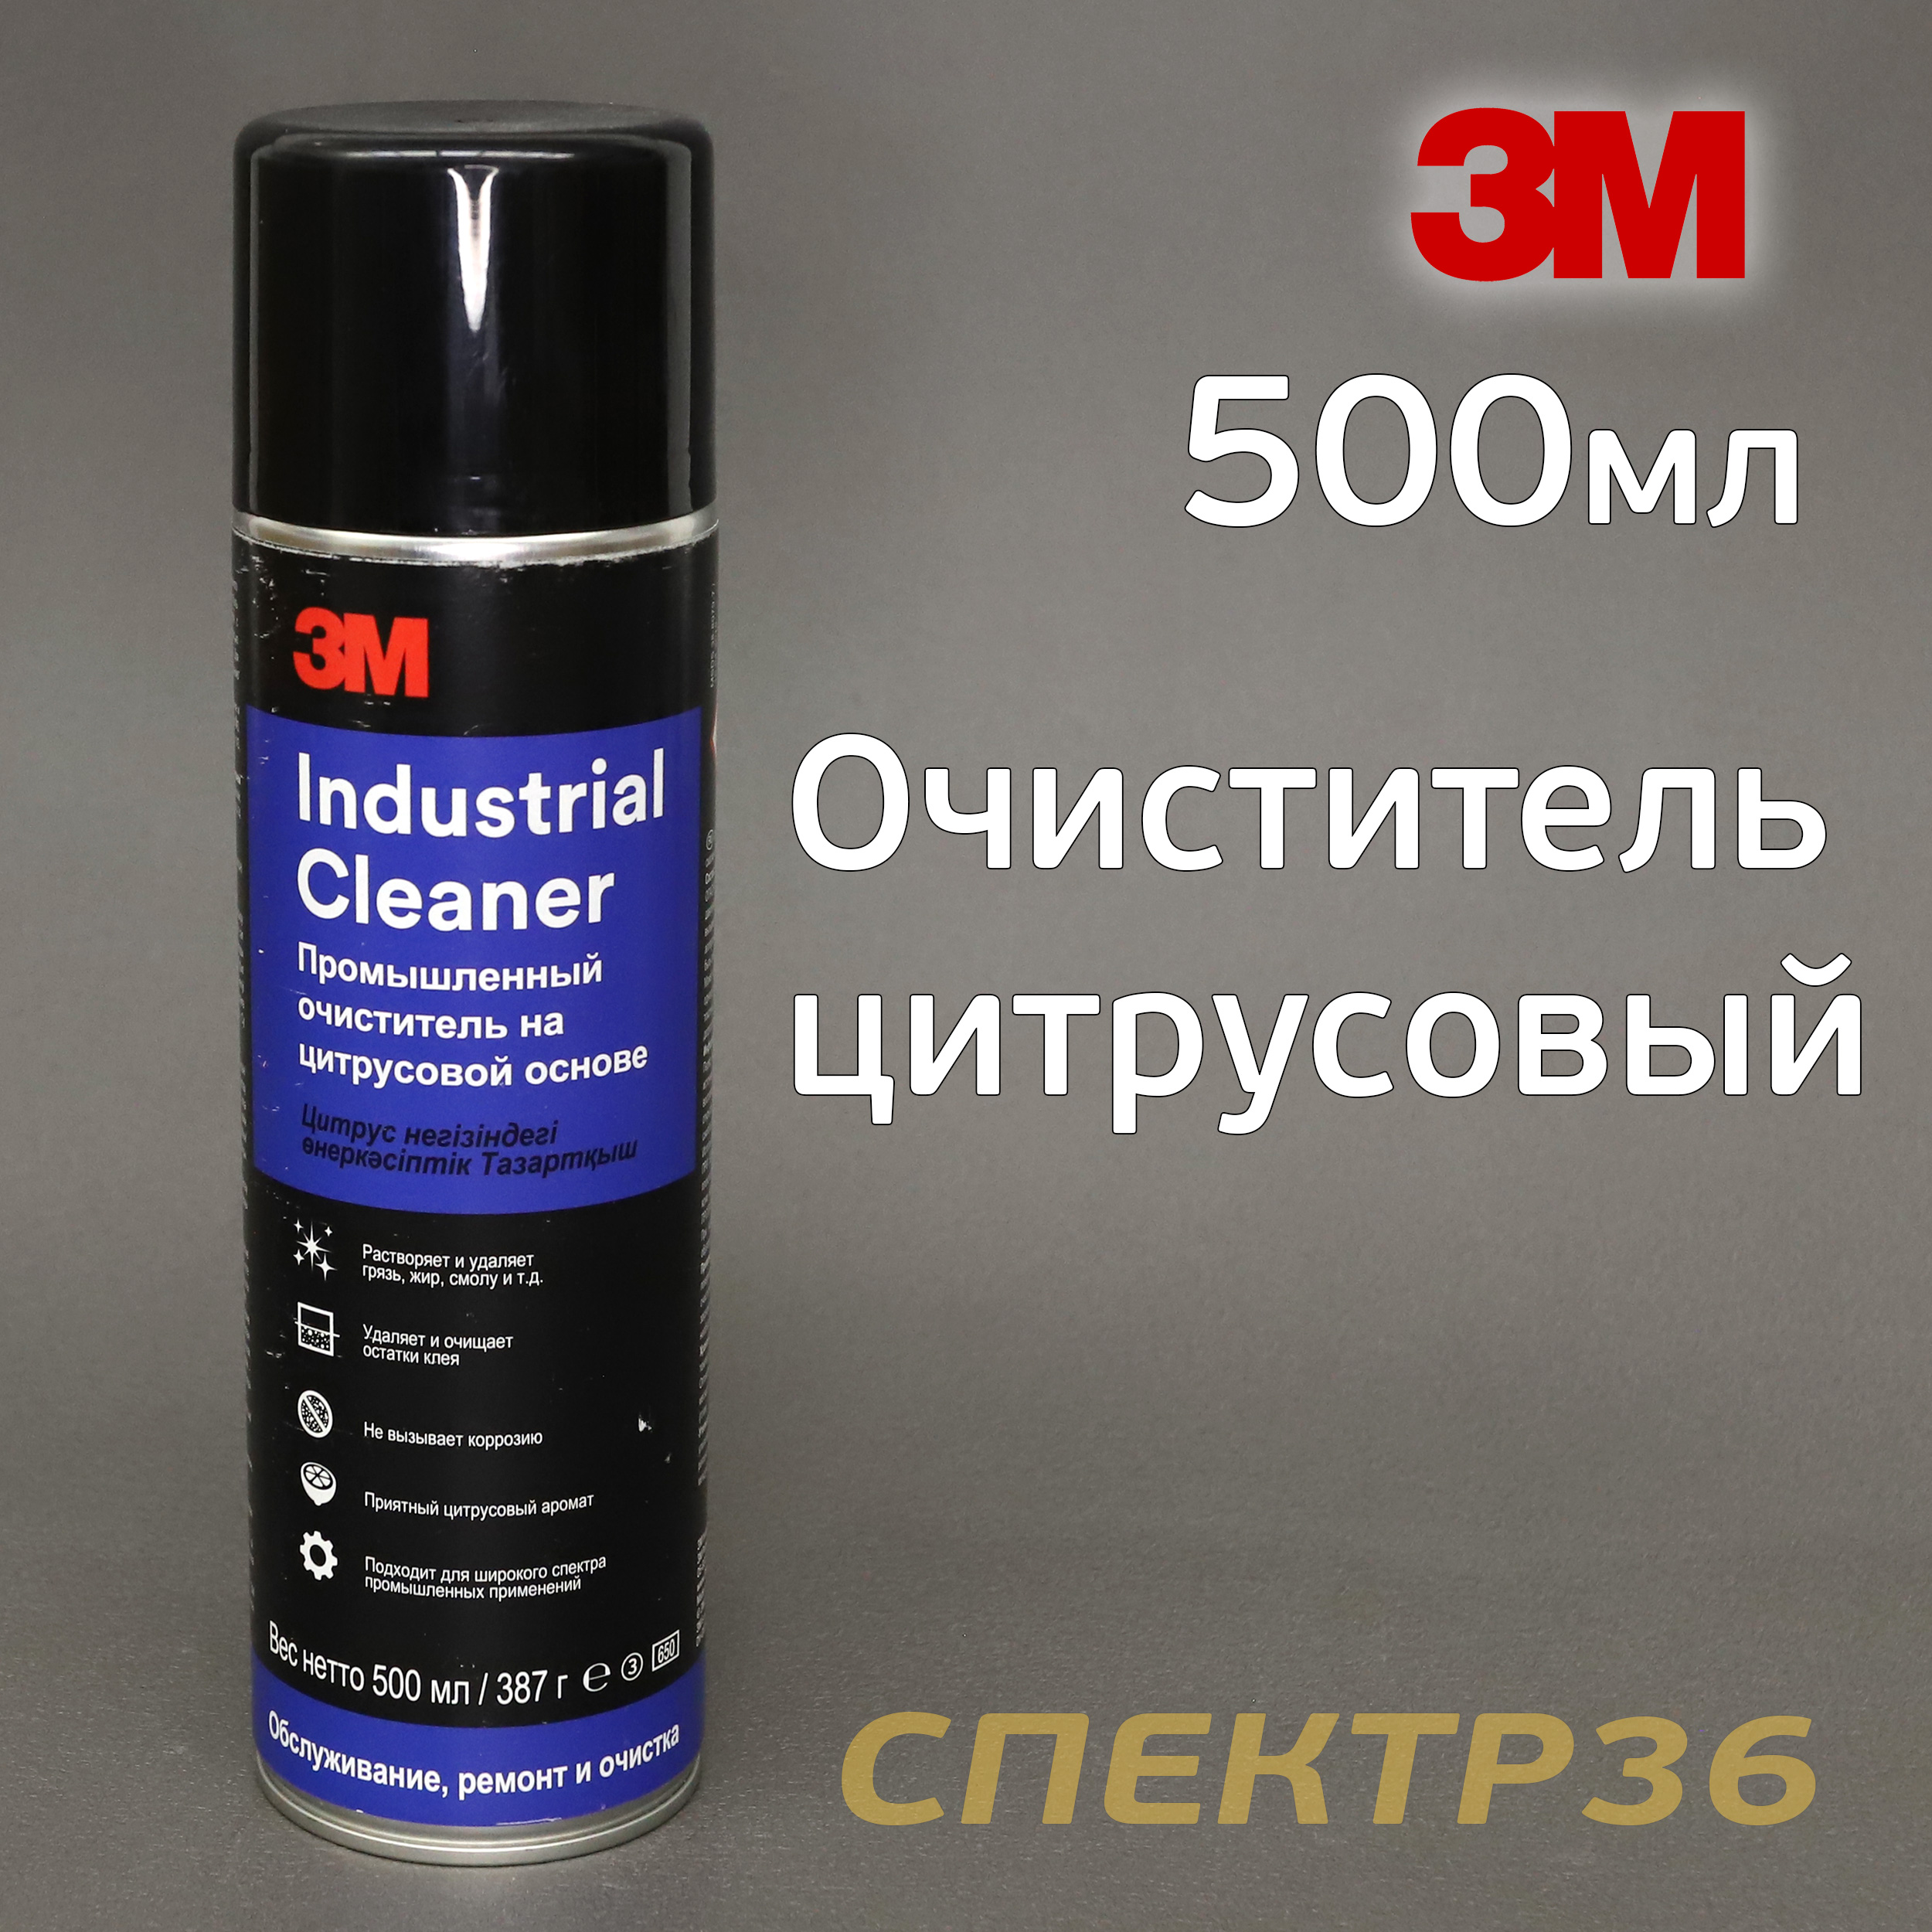 Очиститель-спрей 3M Industrial Cleaner (500мл) апельсинка (цитрусовый .